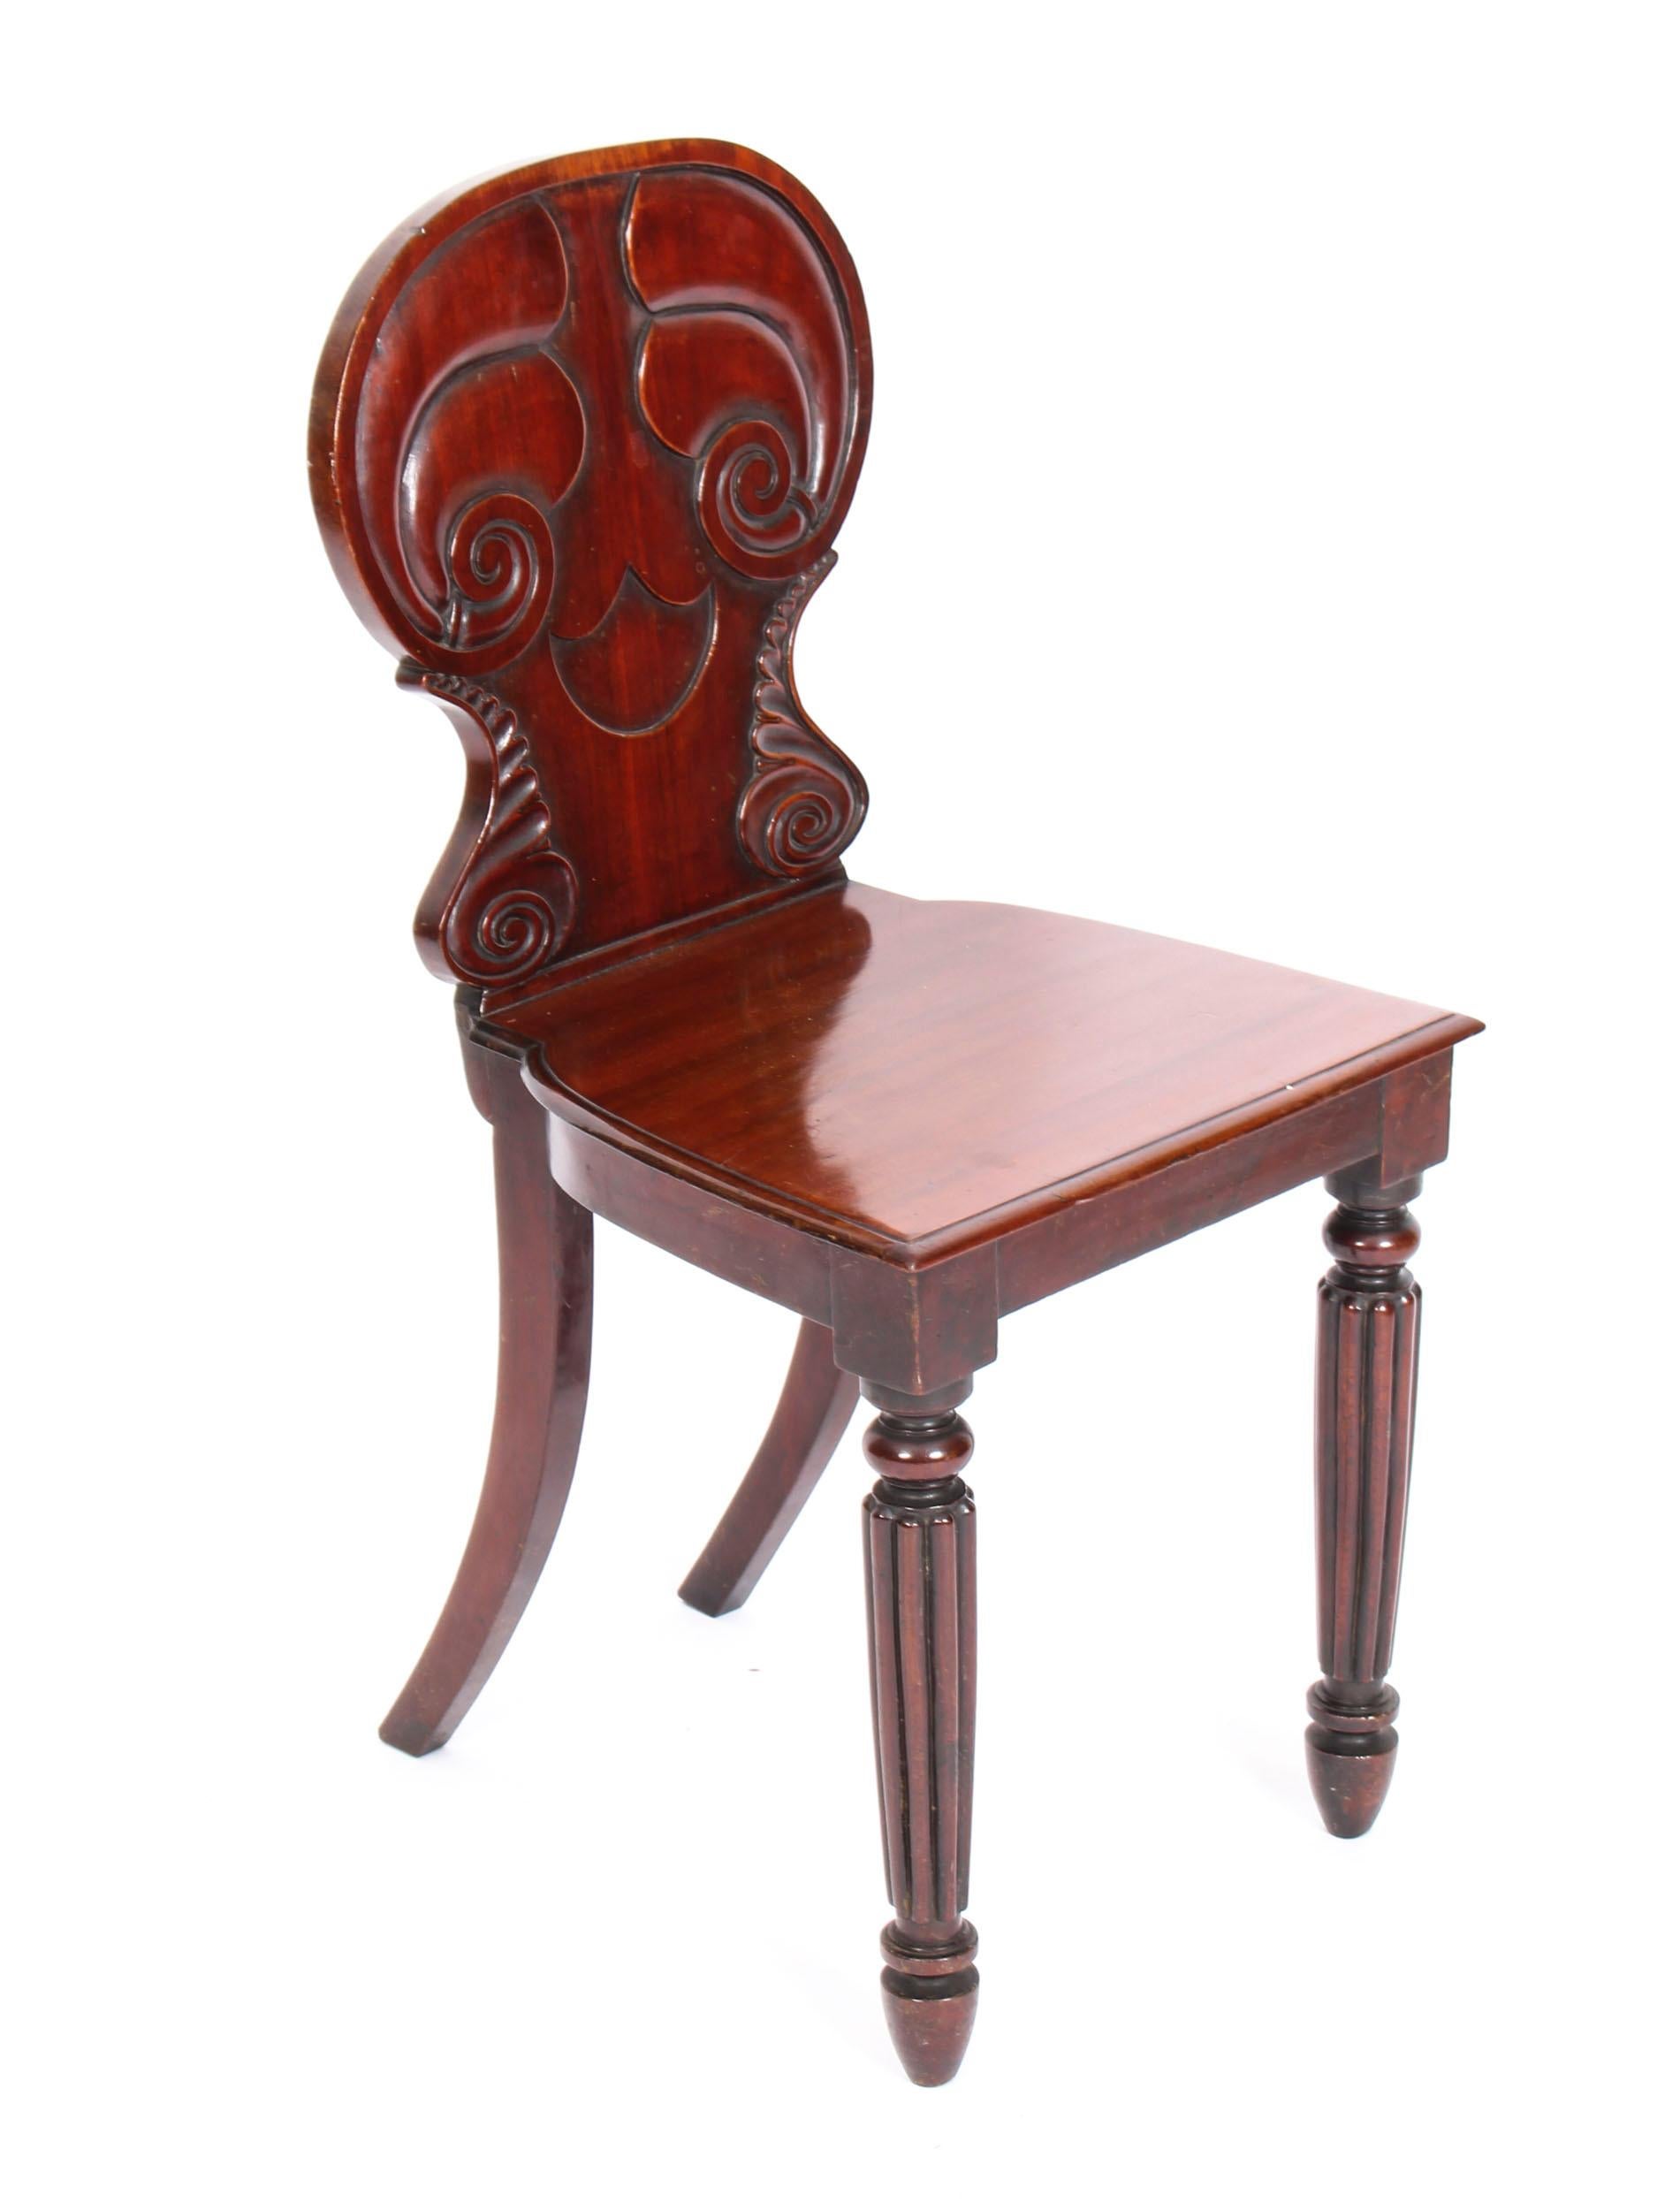 Dies ist eine wunderbare antike Paar Regency Mahagoni-Diele Stühle von Gillows Lancaster, ca. 1820 in Datum.
 
Diese schönen Stühle wurden meisterhaft aus schönem massivem Mahagoni gefertigt.
Sie haben taillierte Rückenlehnen mit Schnitzereien und